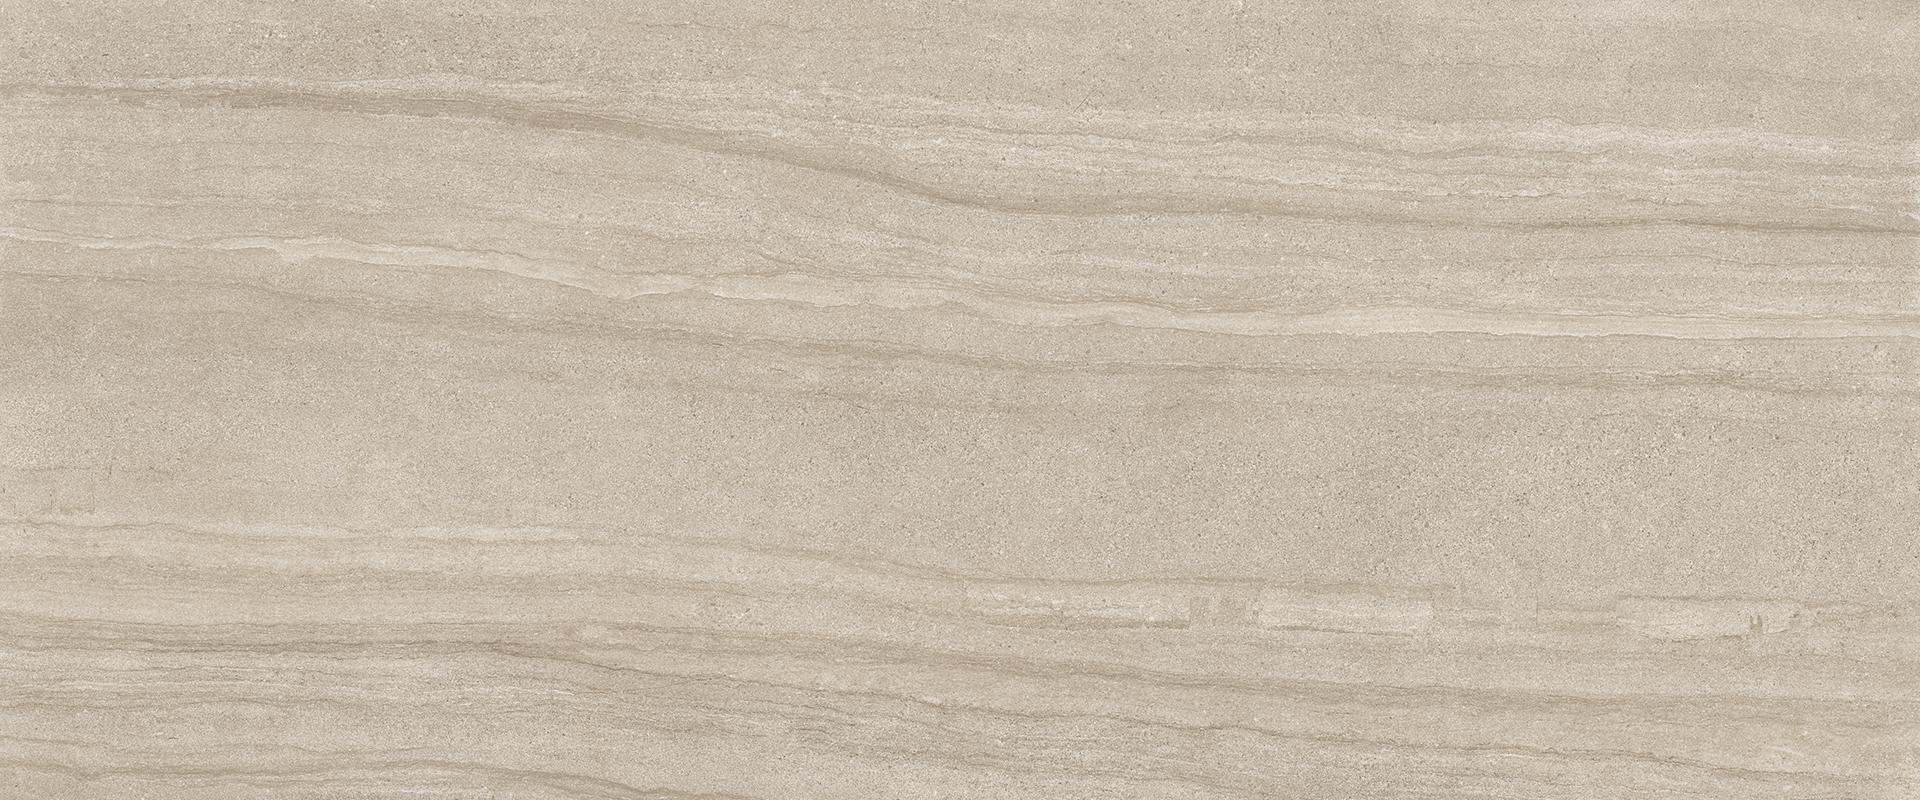 Stone Project: Falda Sand Field Tile (8"x48"x9.5-mm | semi glossy)